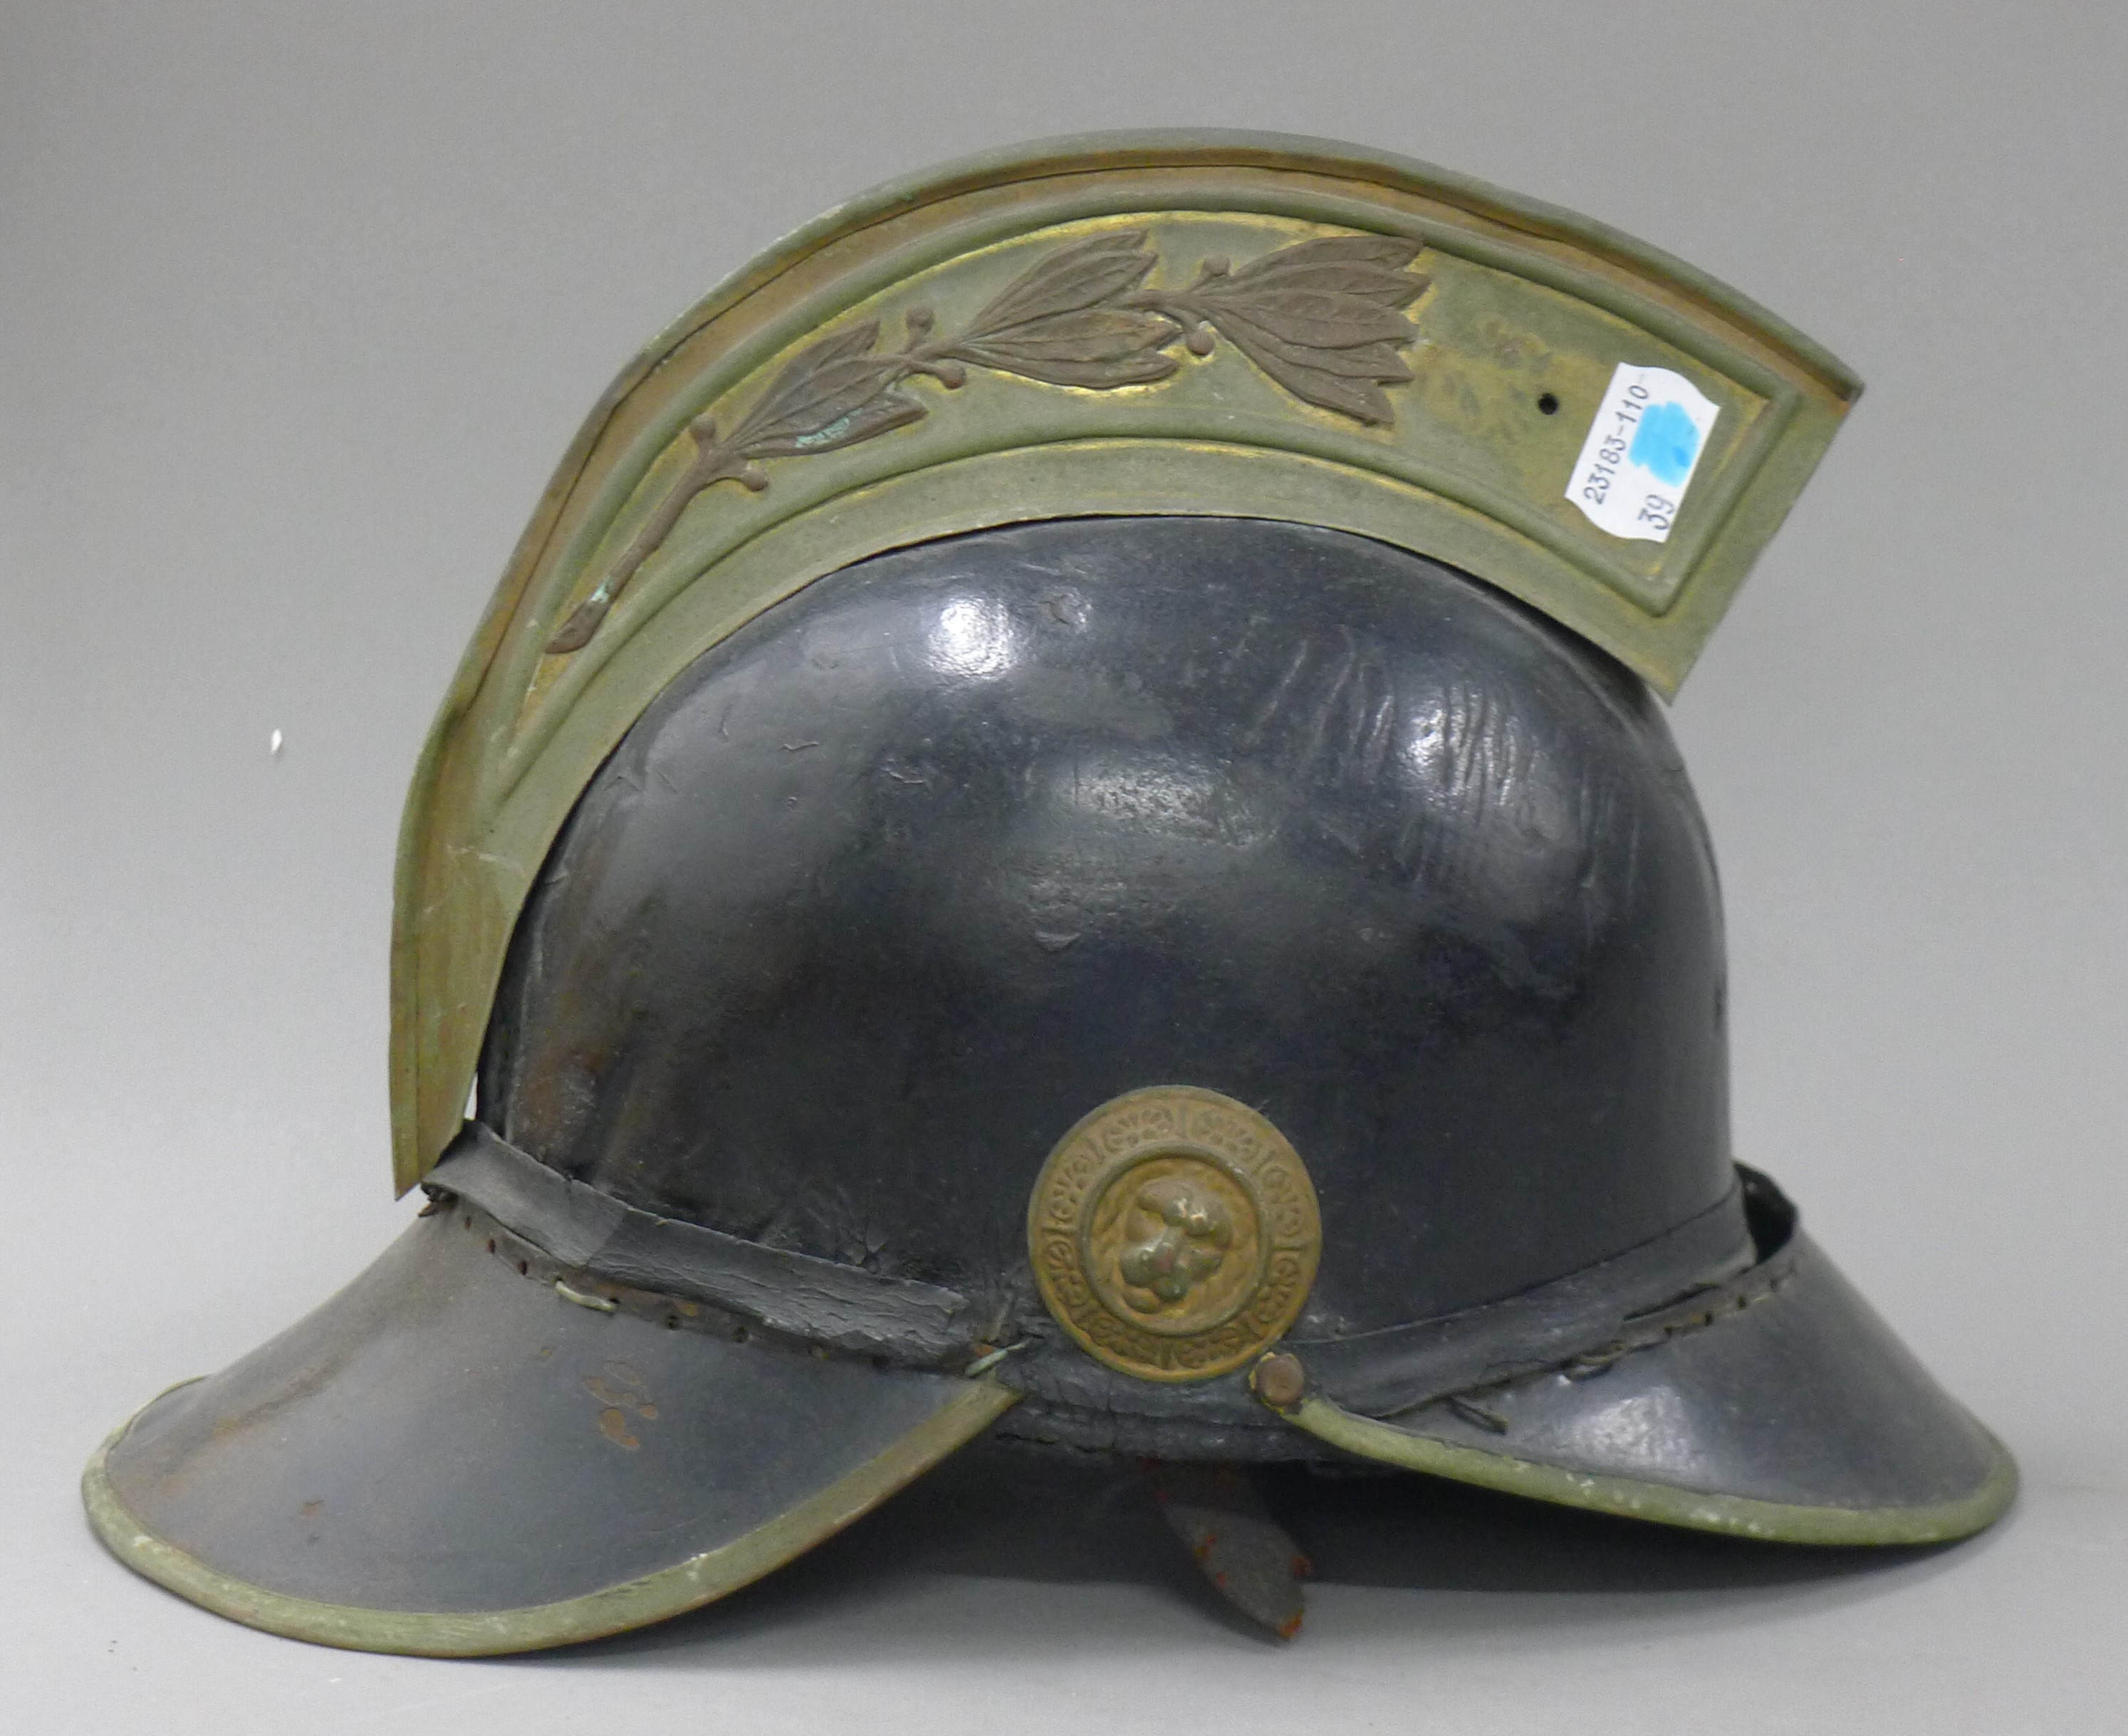 A French fire brigade helmet. 30 cm long.